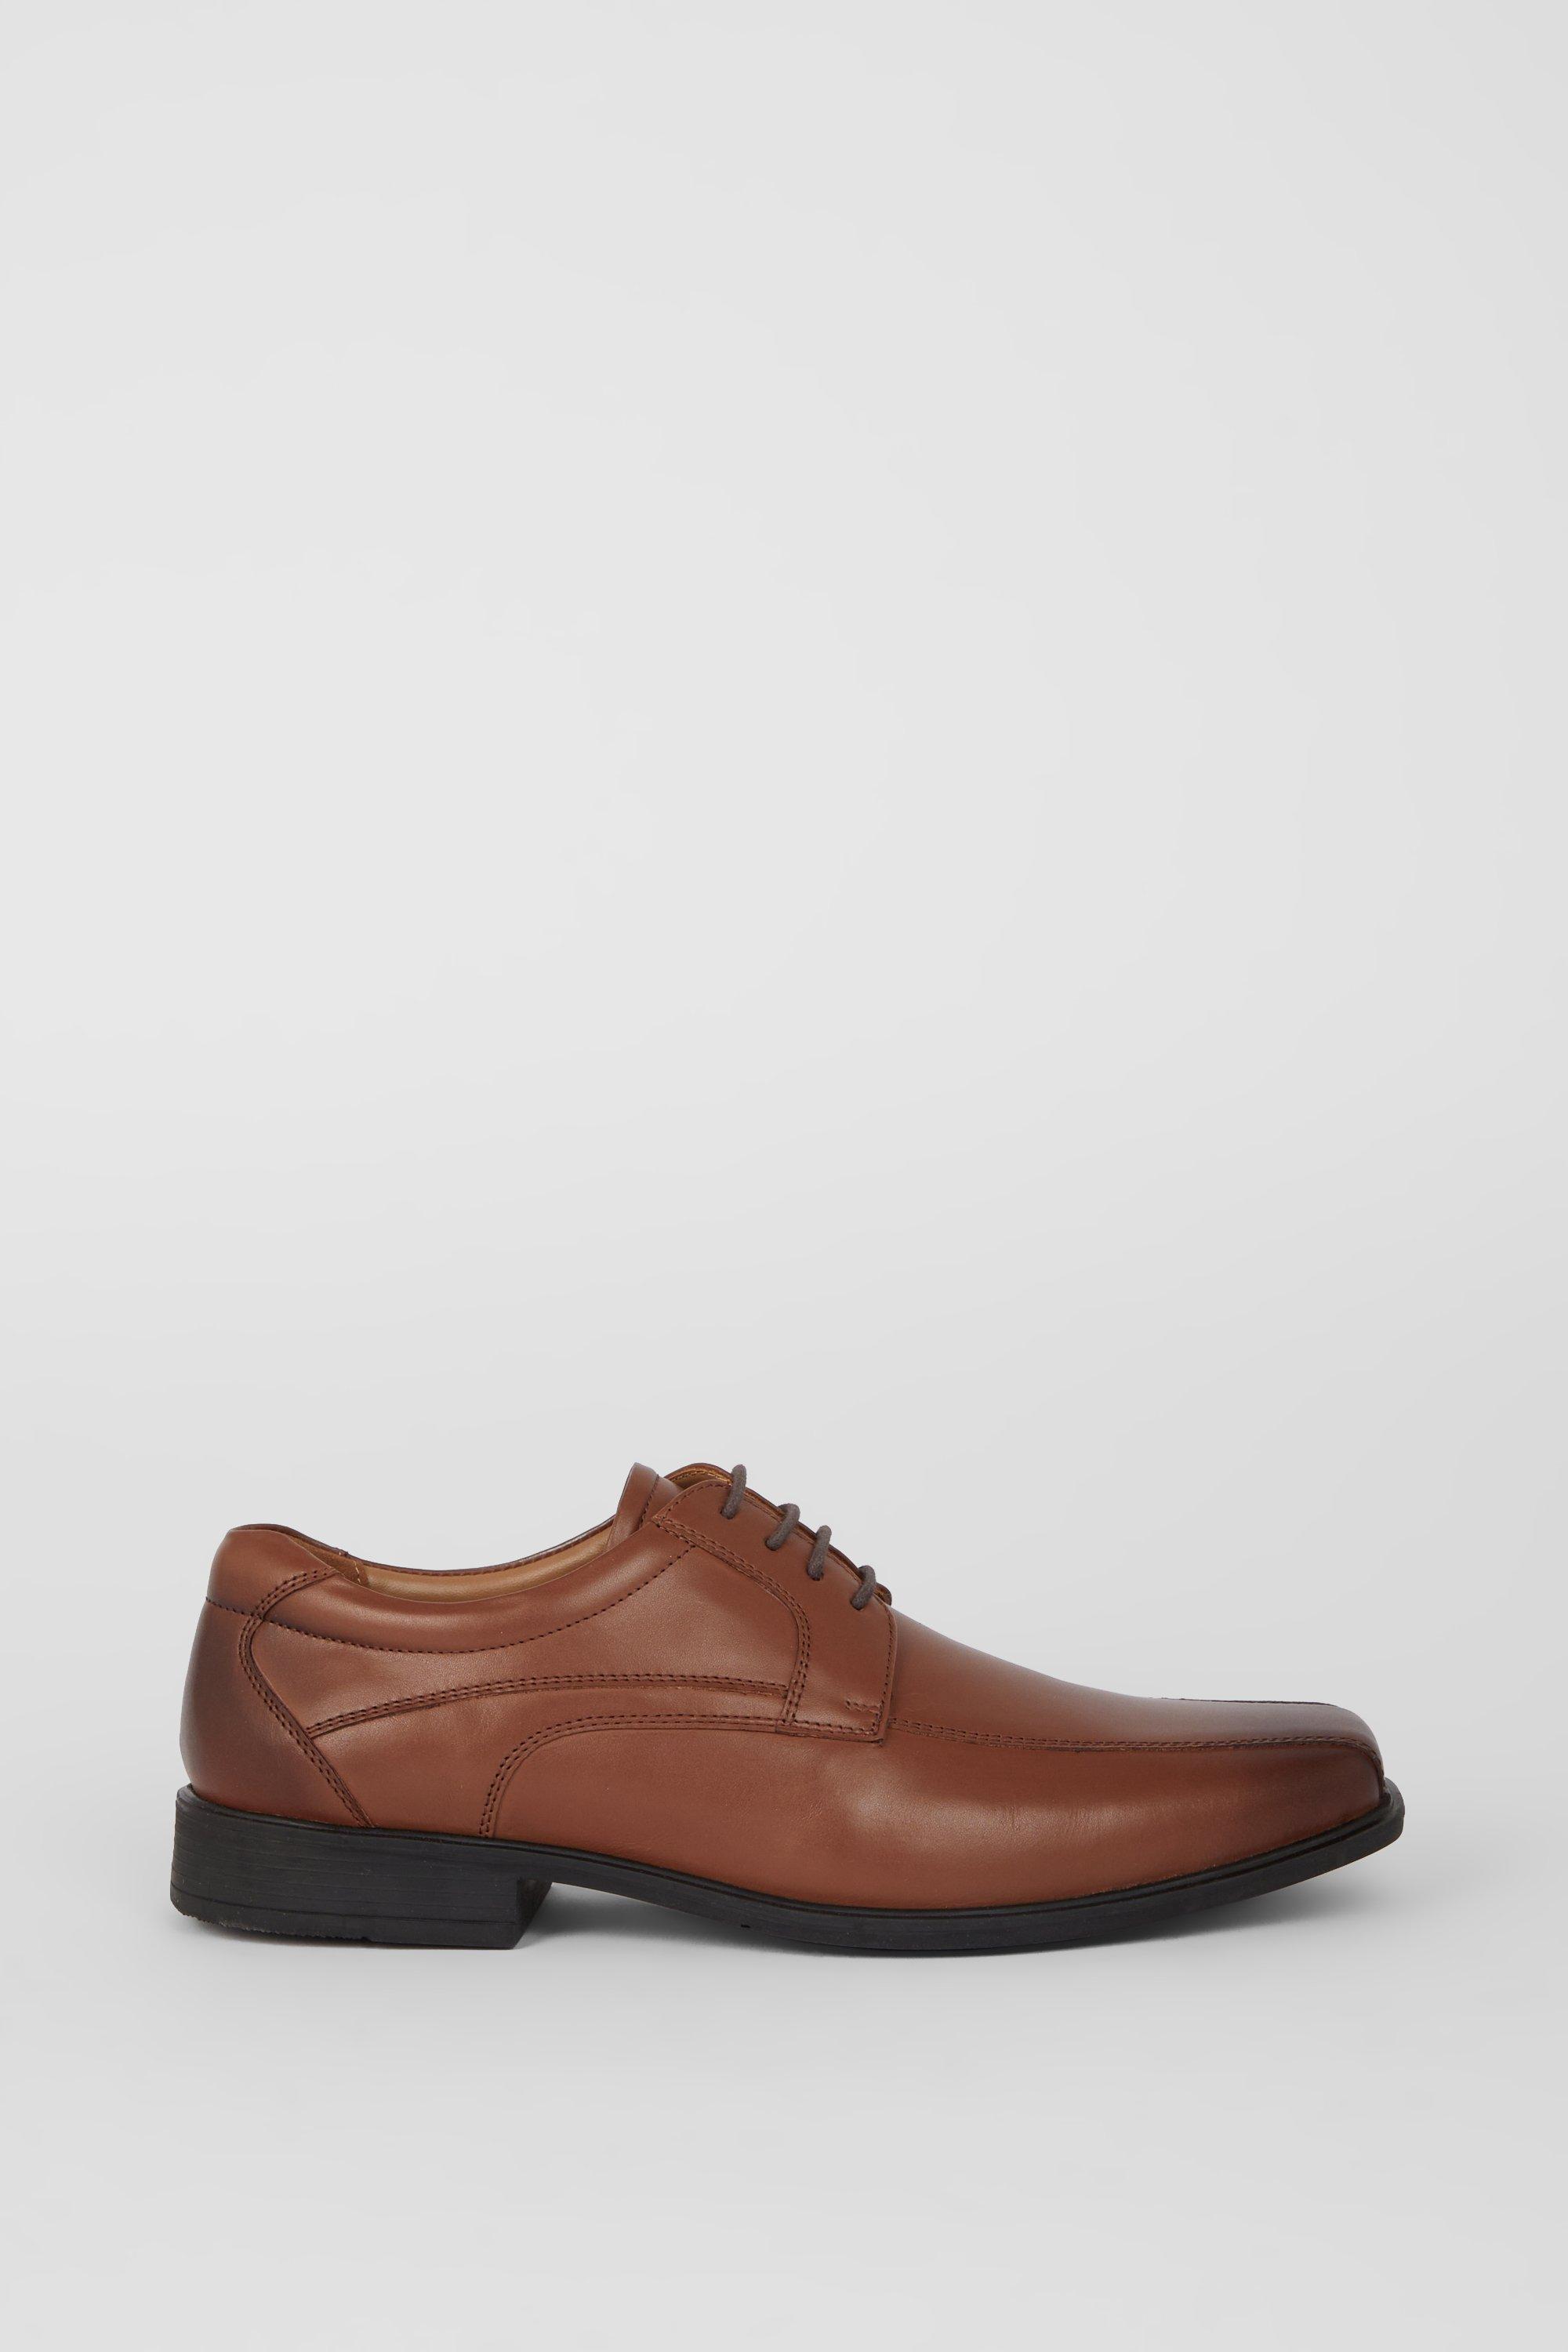 Кожаные туфли Airsoft Comfort на шнуровке Debenhams, коричневый ботинки дерби кожаные на шнуровке 36 черный